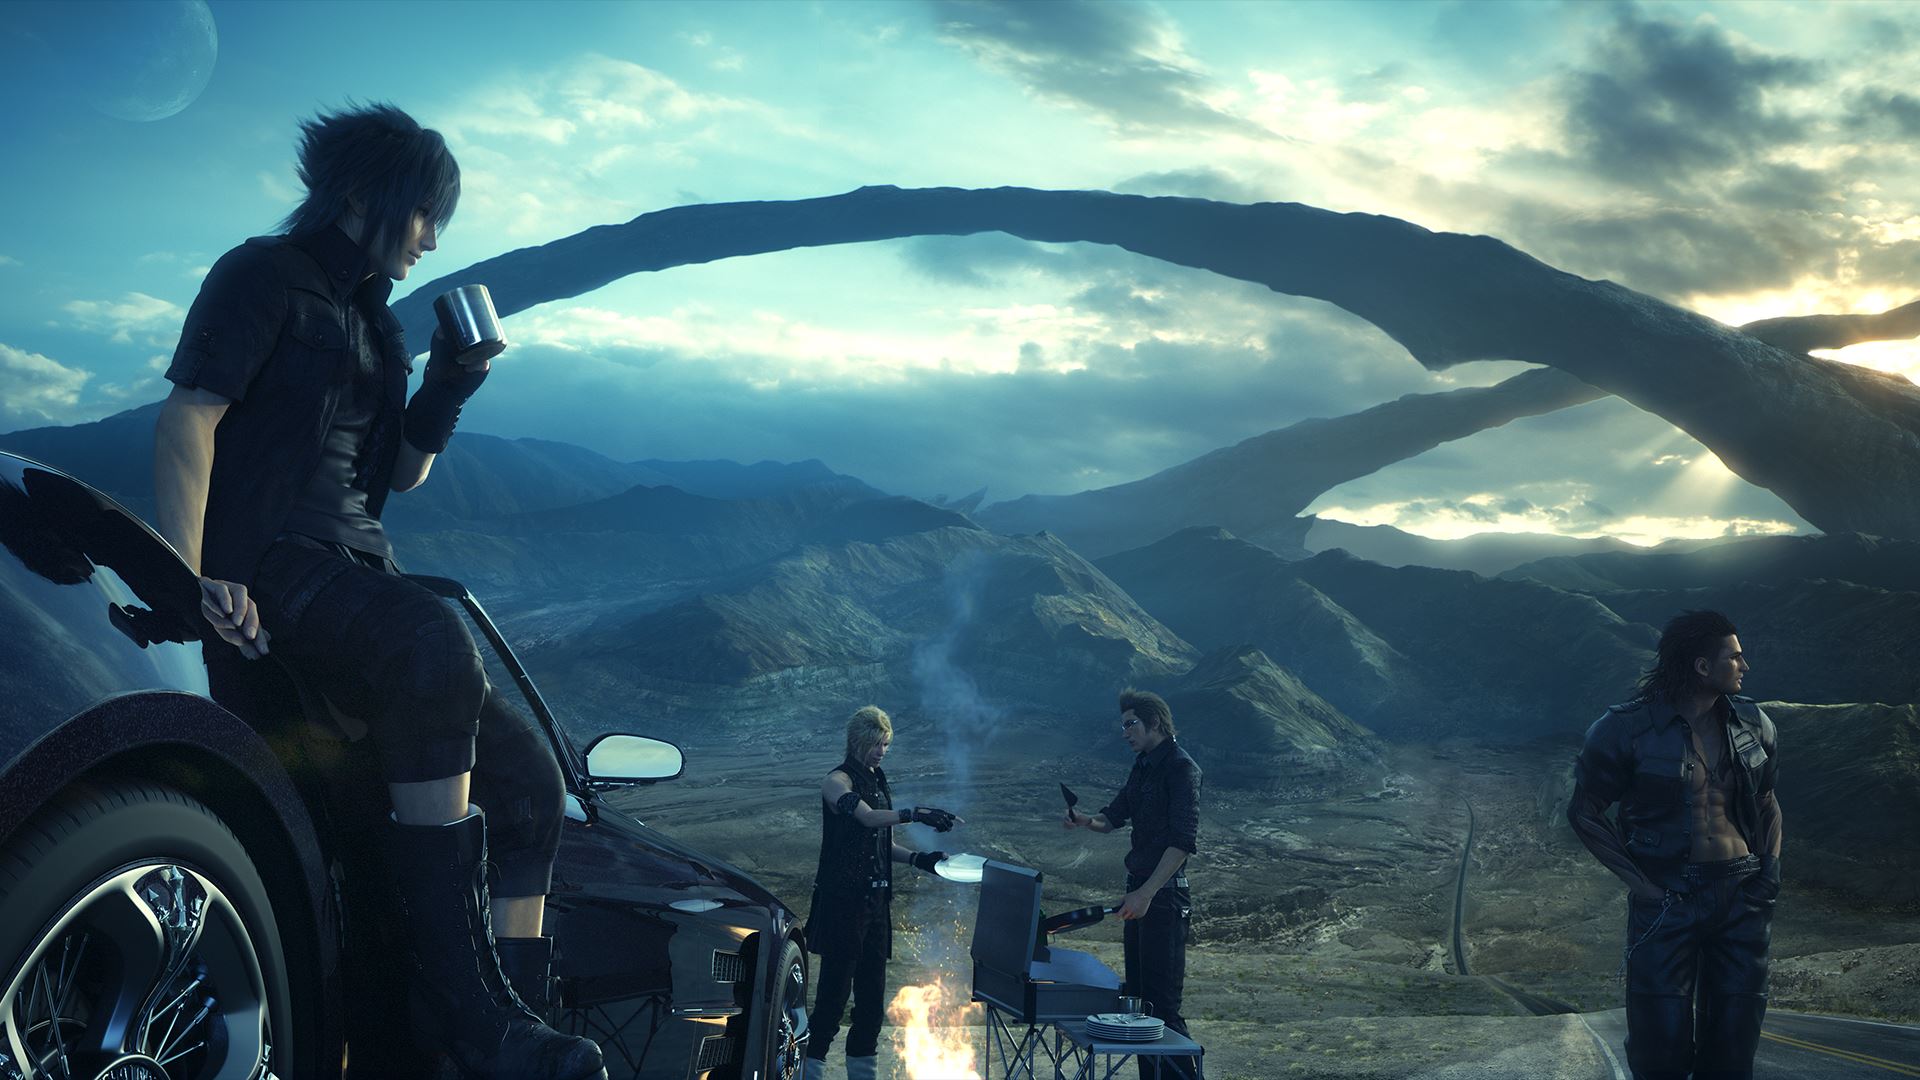 Liberado novo teaser de Final Fantasy XV